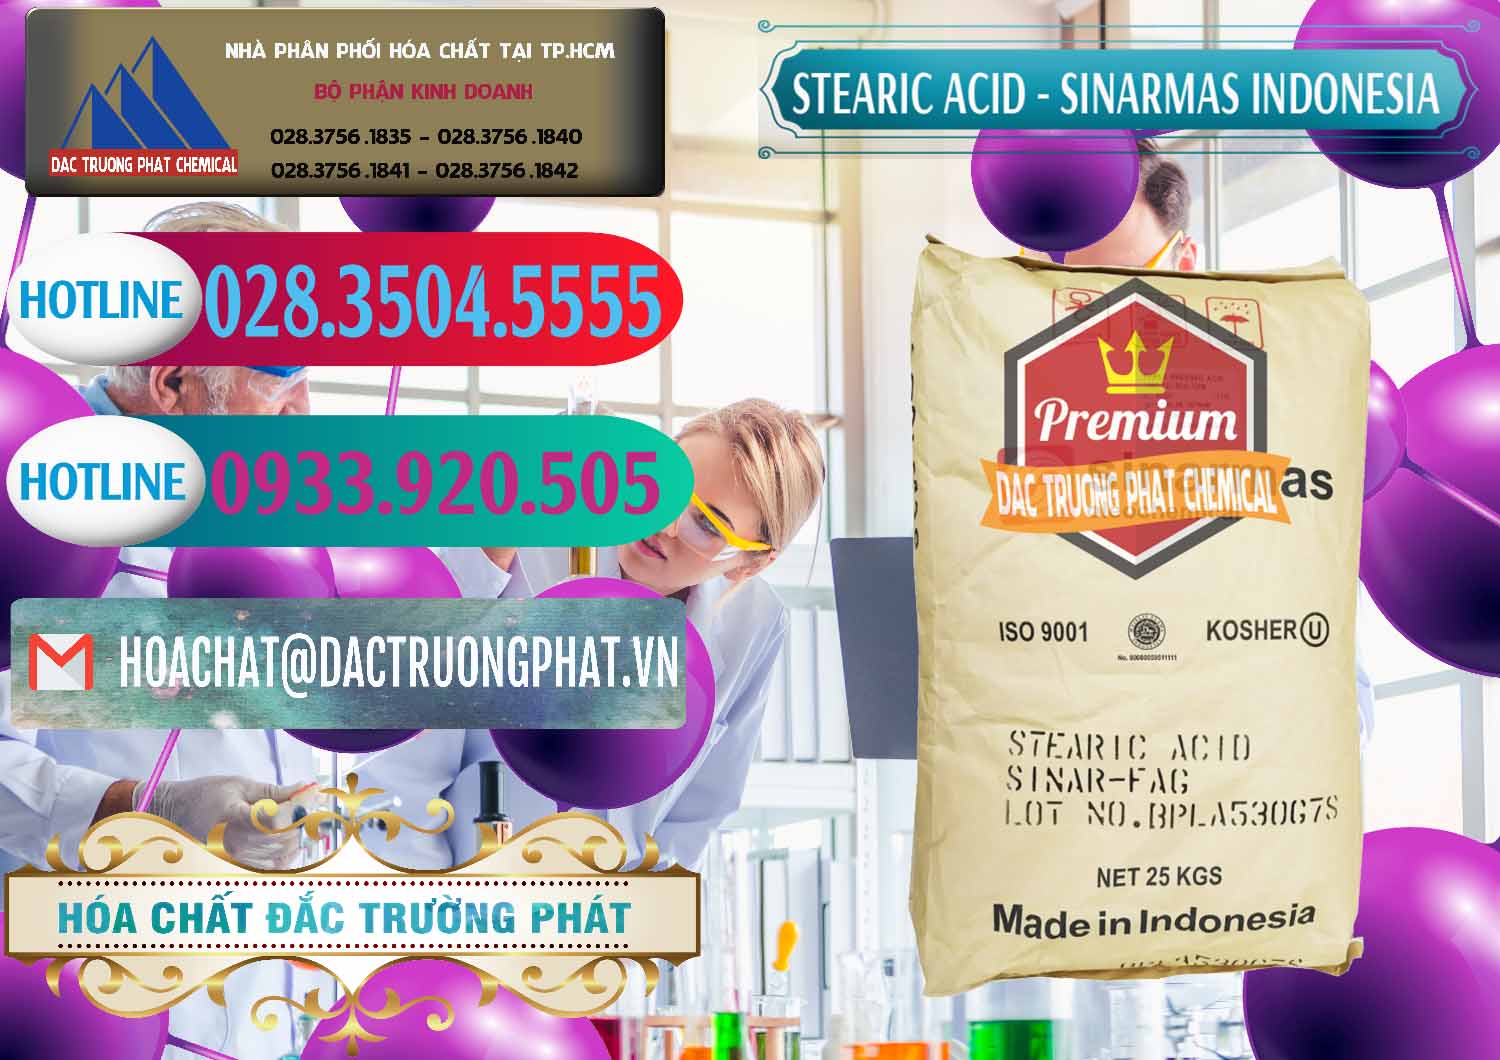 Công ty chuyên kinh doanh và bán Axit Stearic - Stearic Acid Sinarmas Indonesia - 0389 - Kinh doanh & phân phối hóa chất tại TP.HCM - truongphat.vn